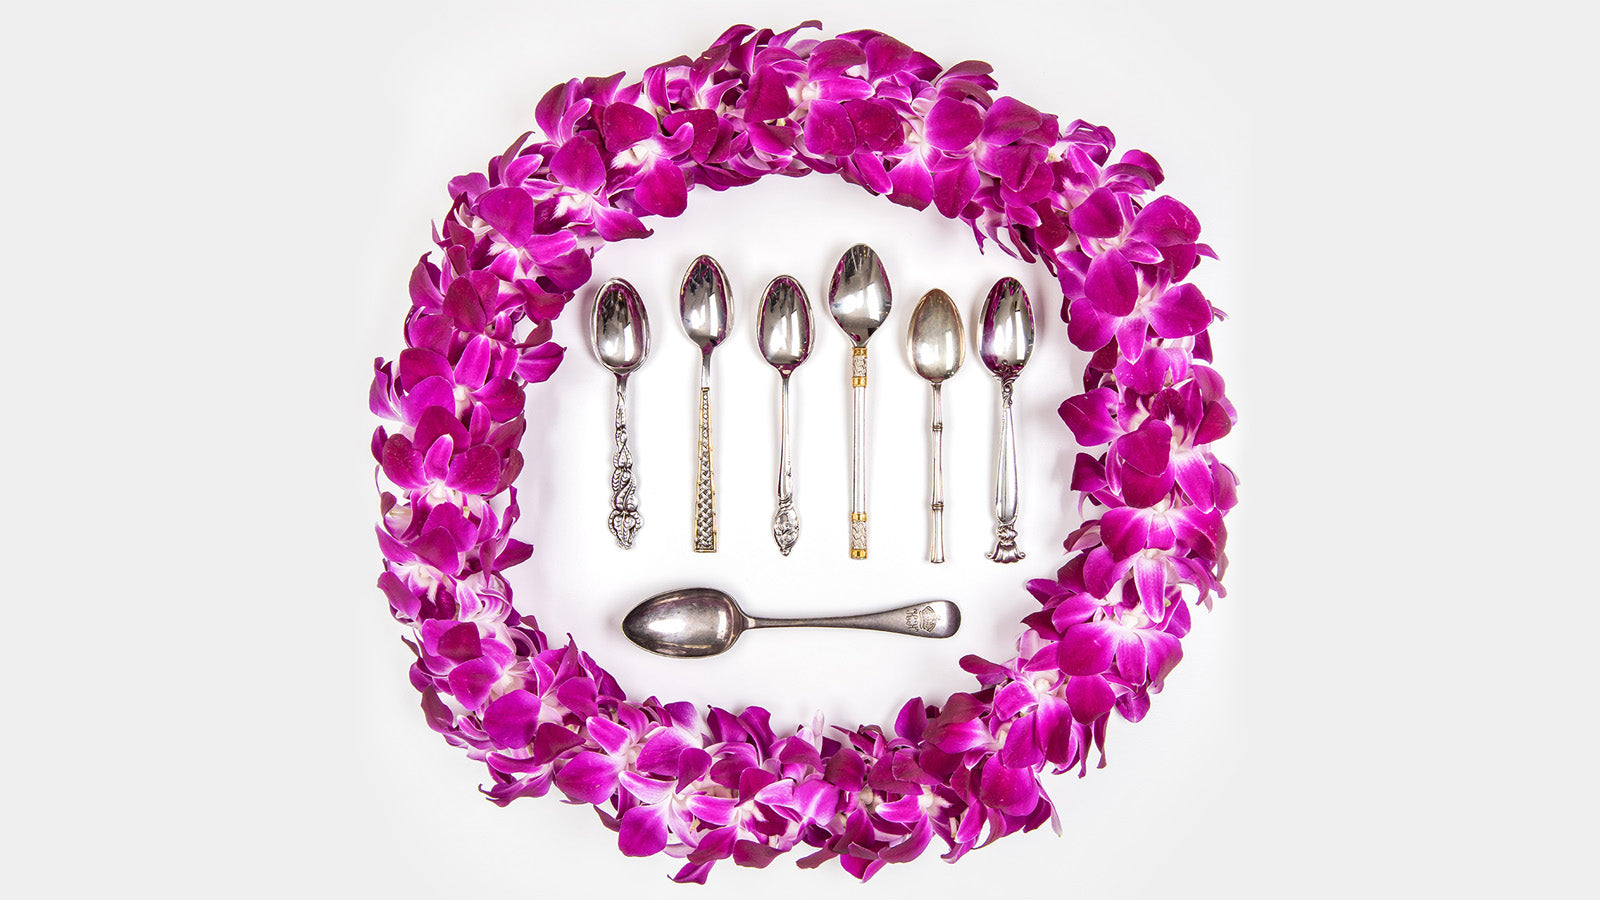 Hawaiian silverware